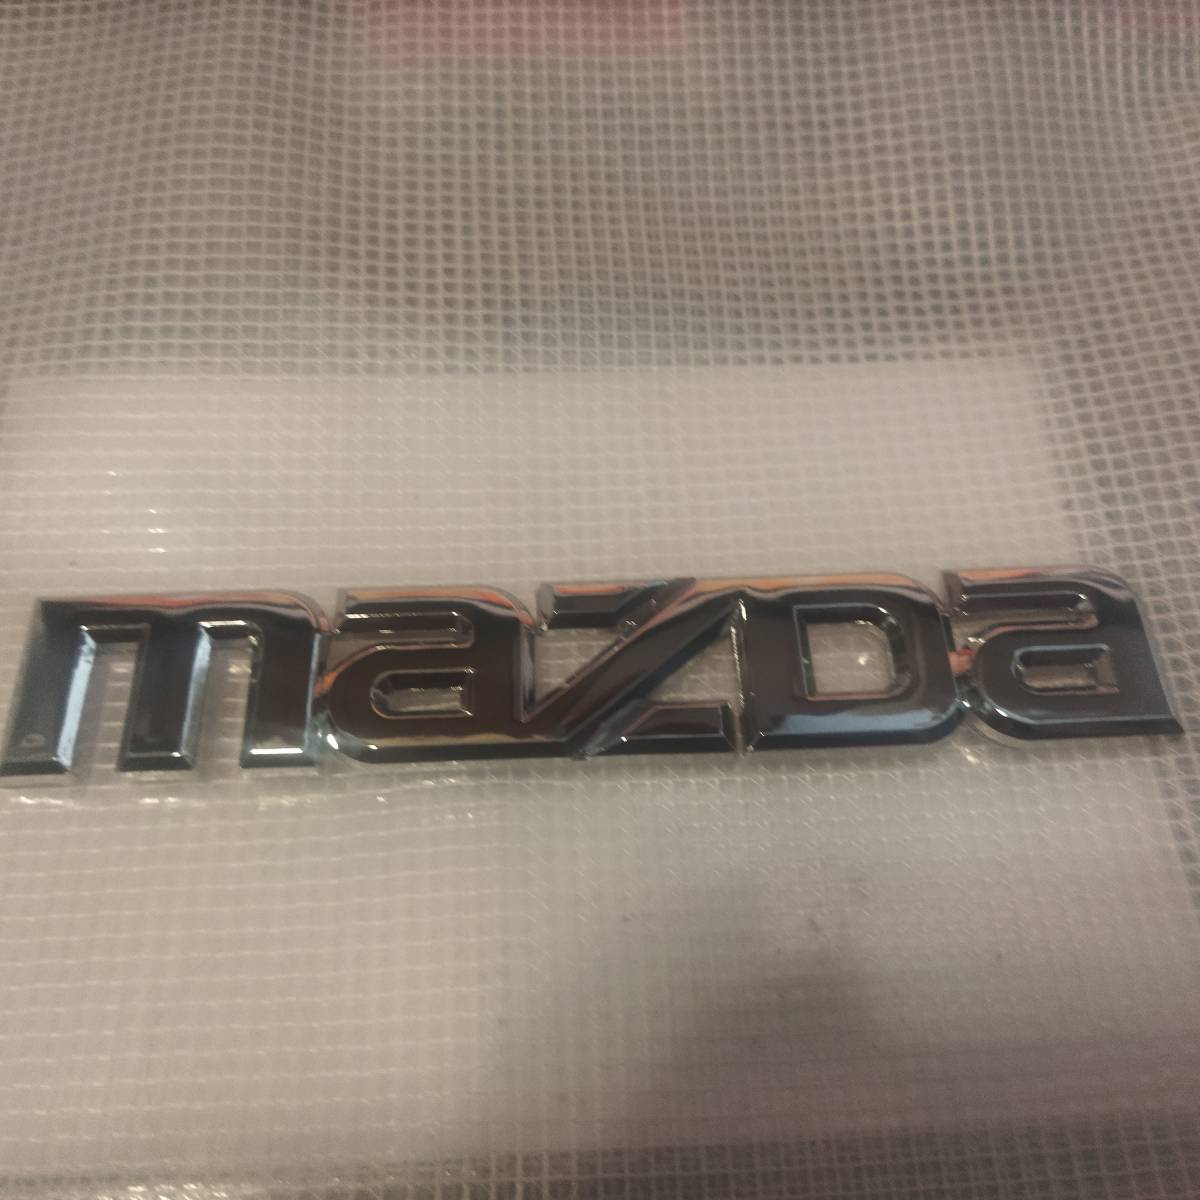 MAZDA( Mazda ) эмблема металлизированный серебряный ширина 14.4cm× длина 2.7cm